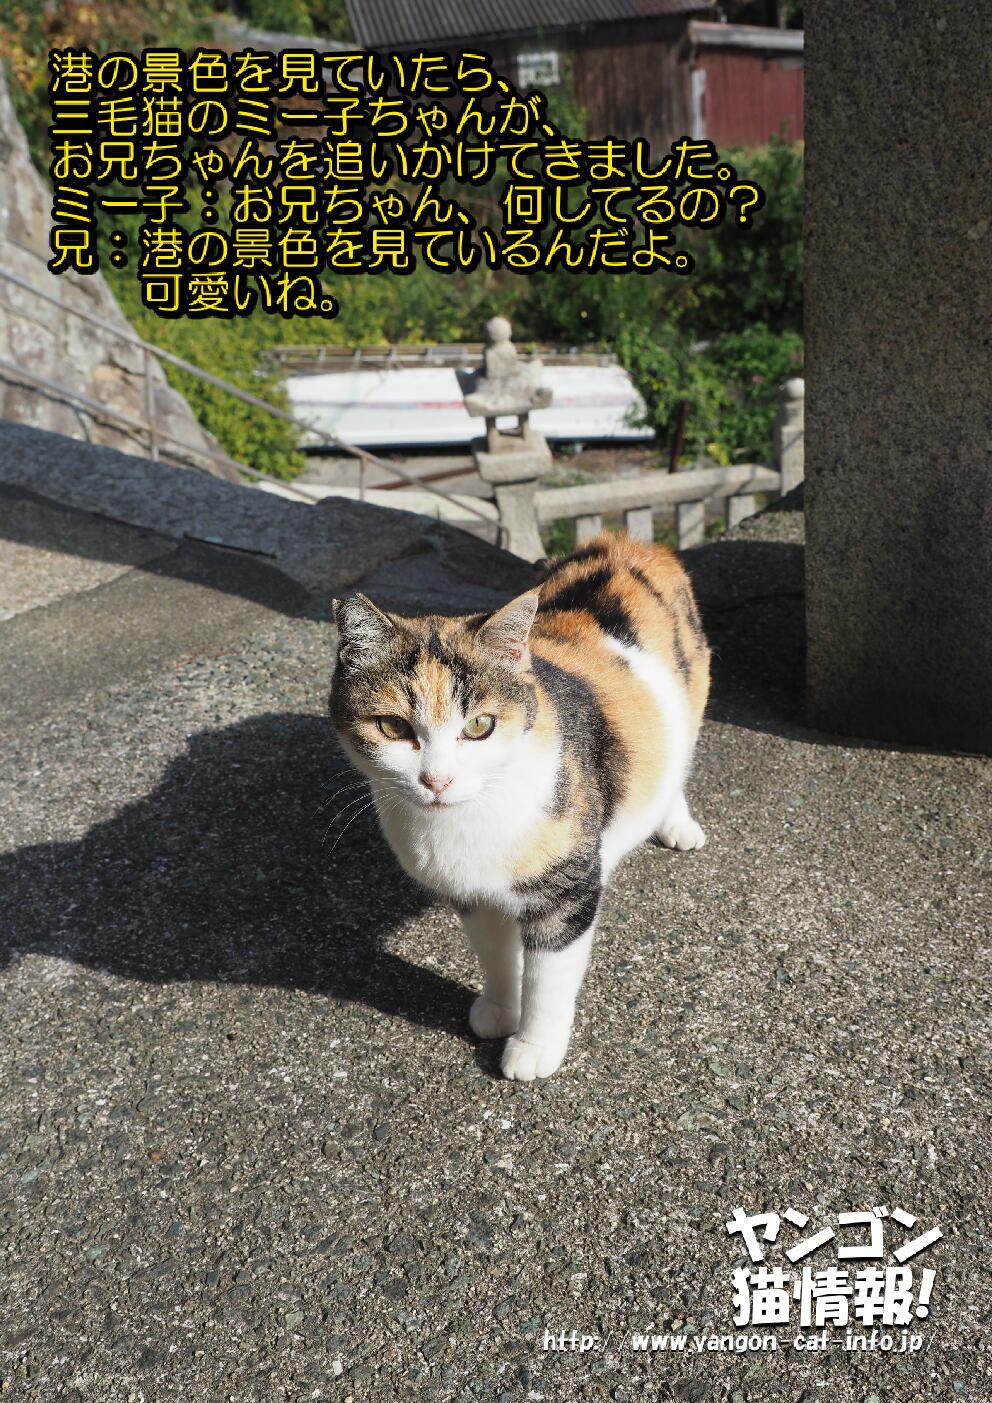 猫旅_第15回_愛媛県青島_025